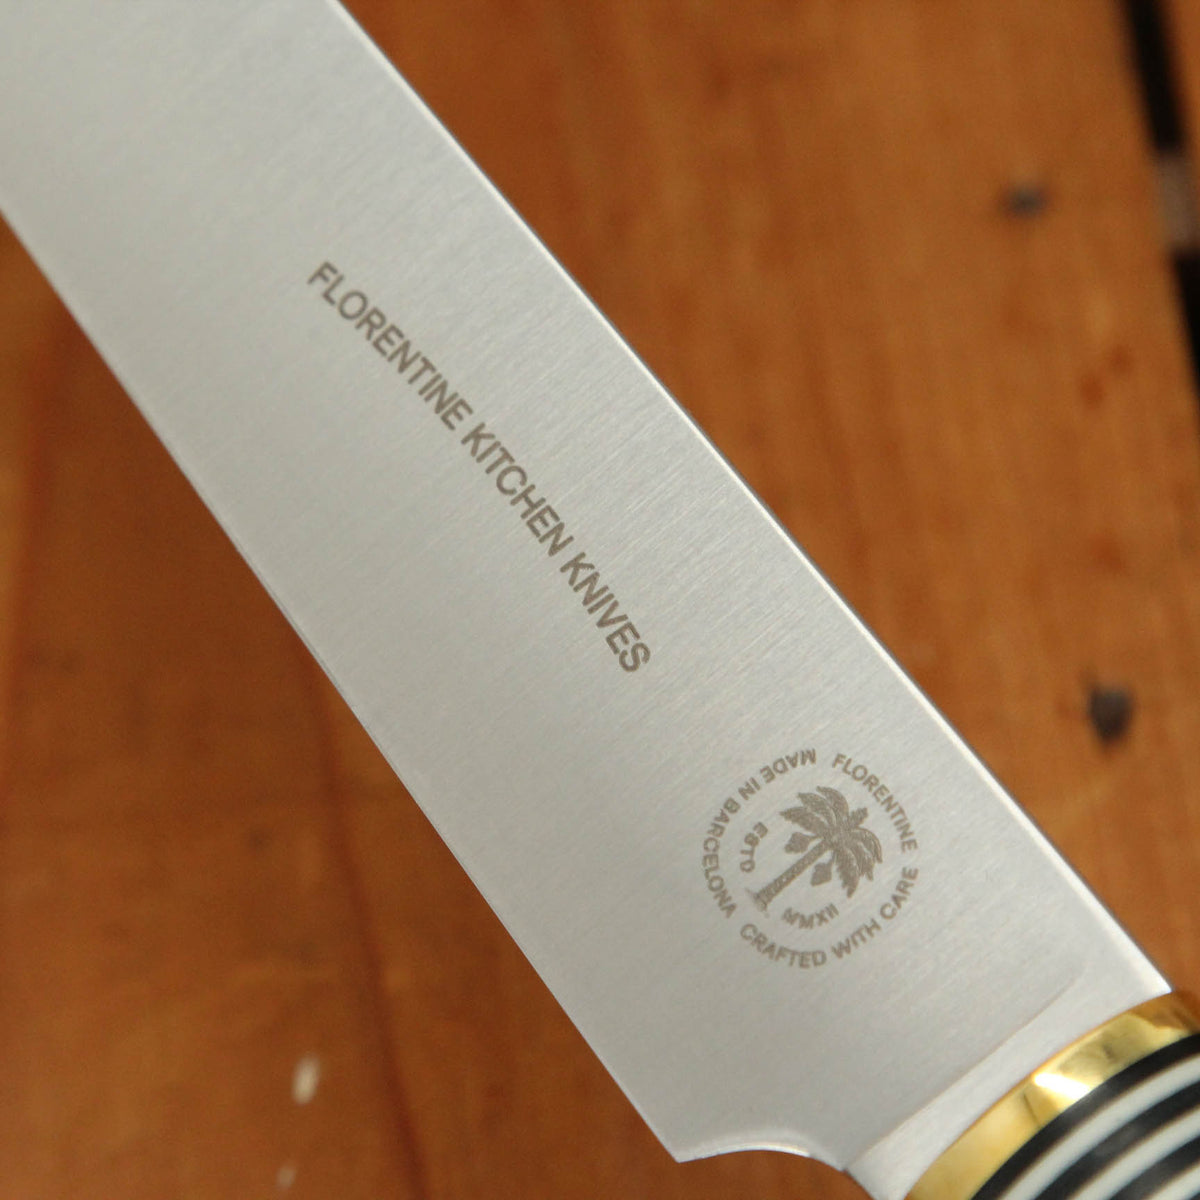 Florentine Four 270mm Slicer Knife Stainless White & Black